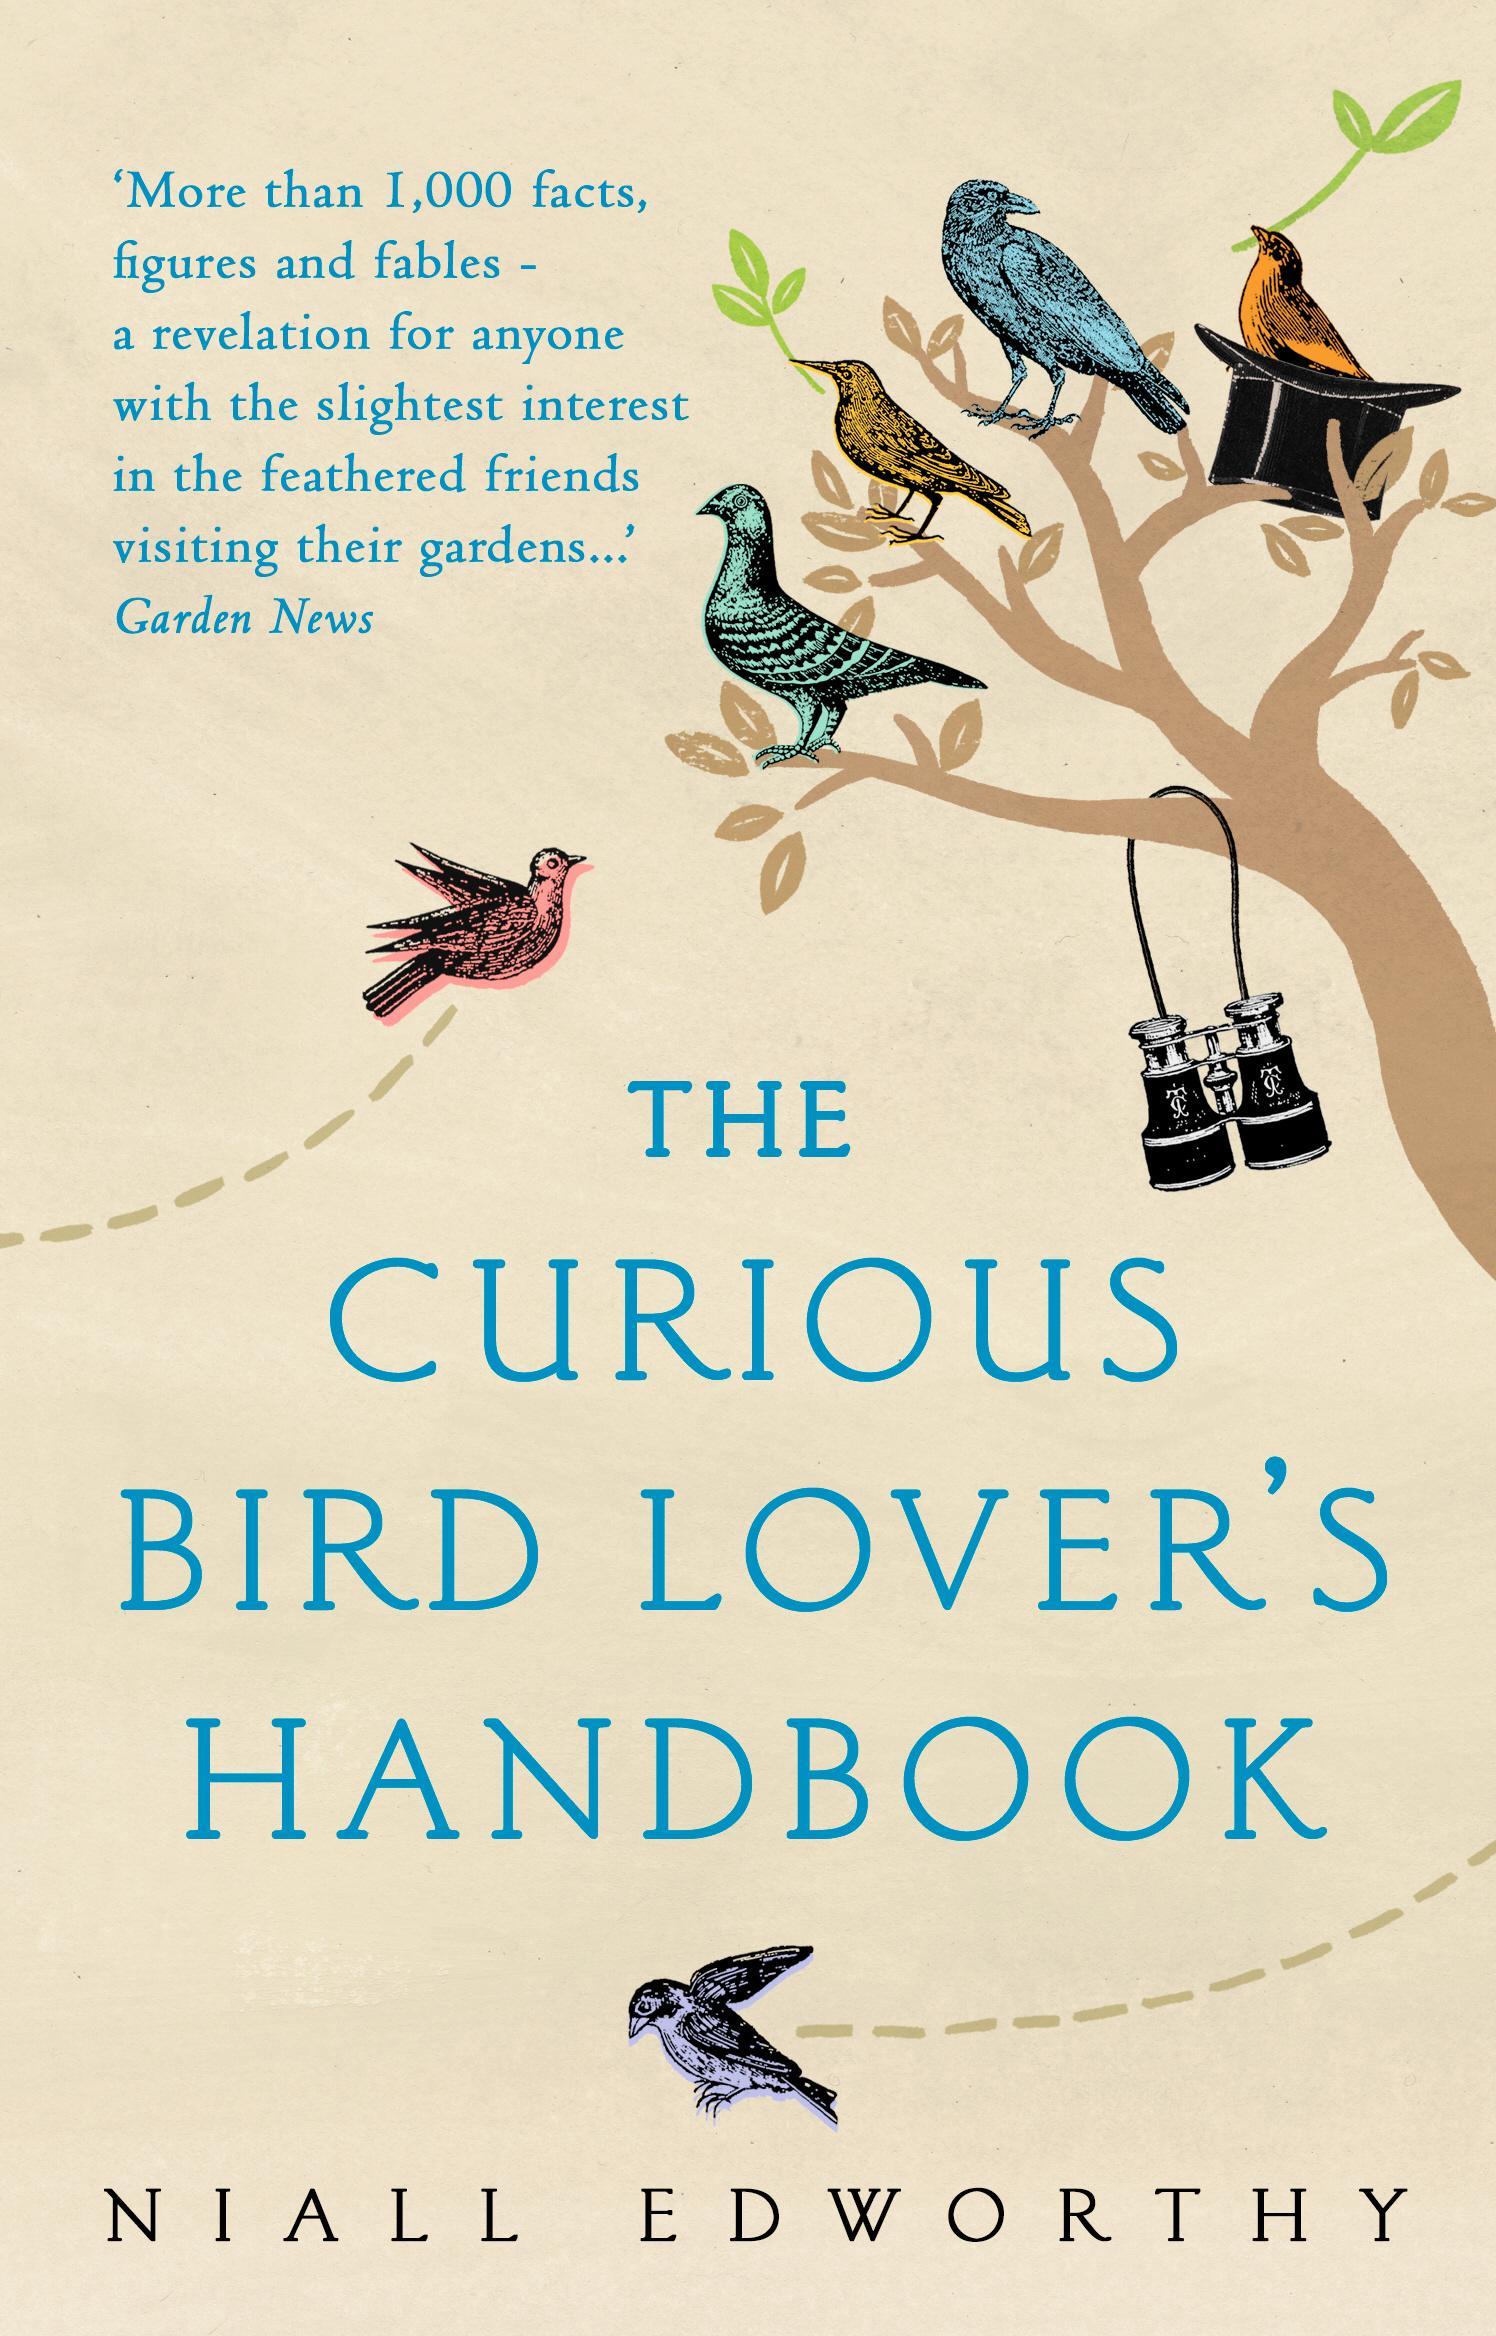 Curious Bird Lover's Handbook